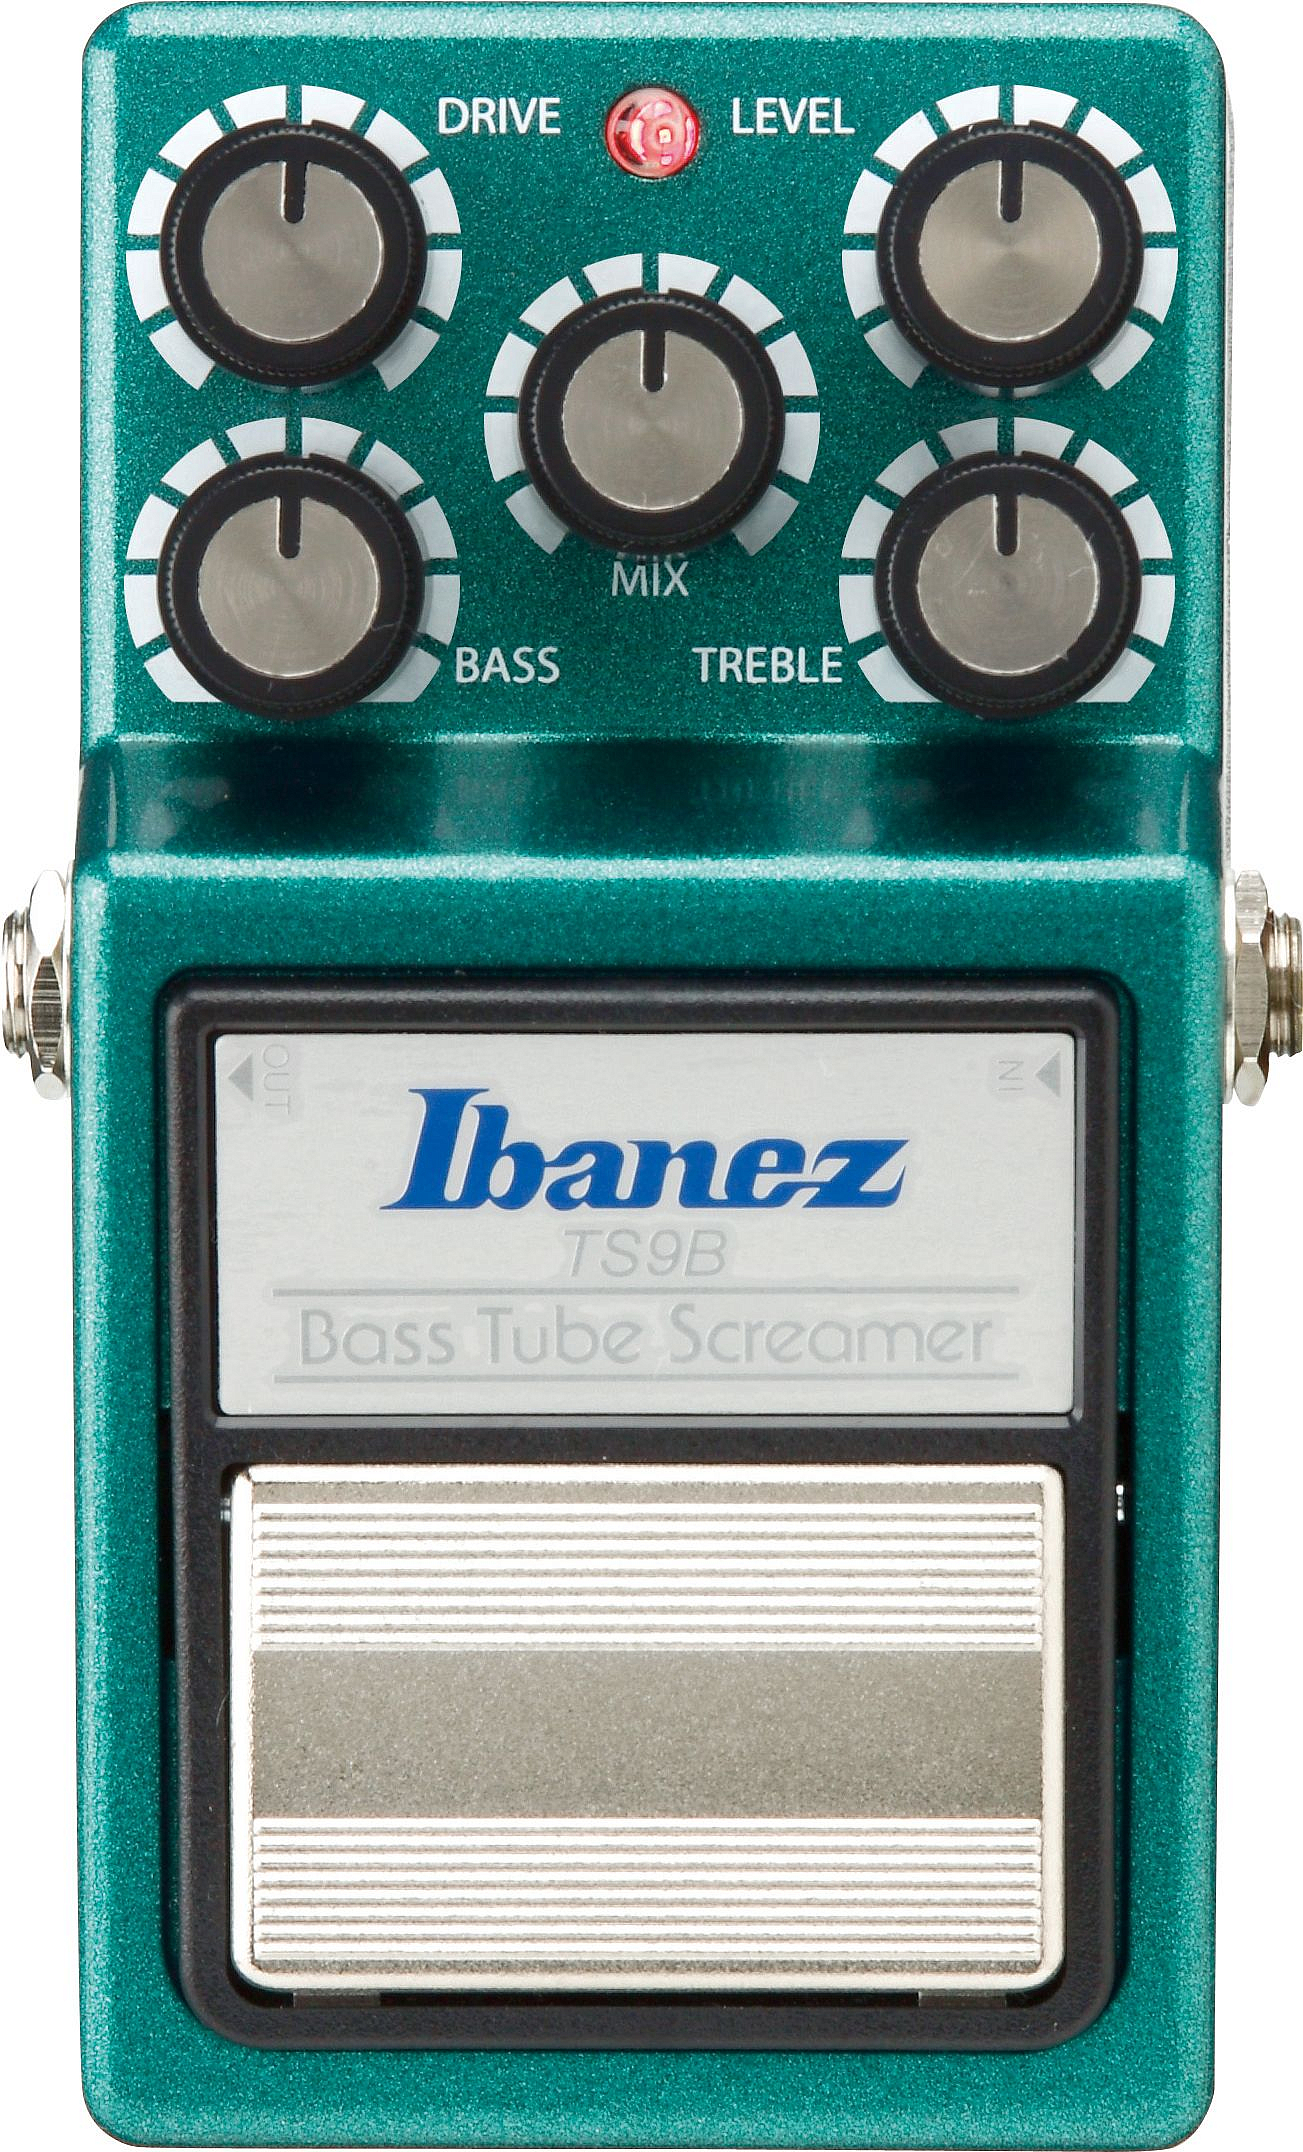 Ibanez TS9B Bass Tubescreamer басовая педаль эффектов | Продукция IBANEZ